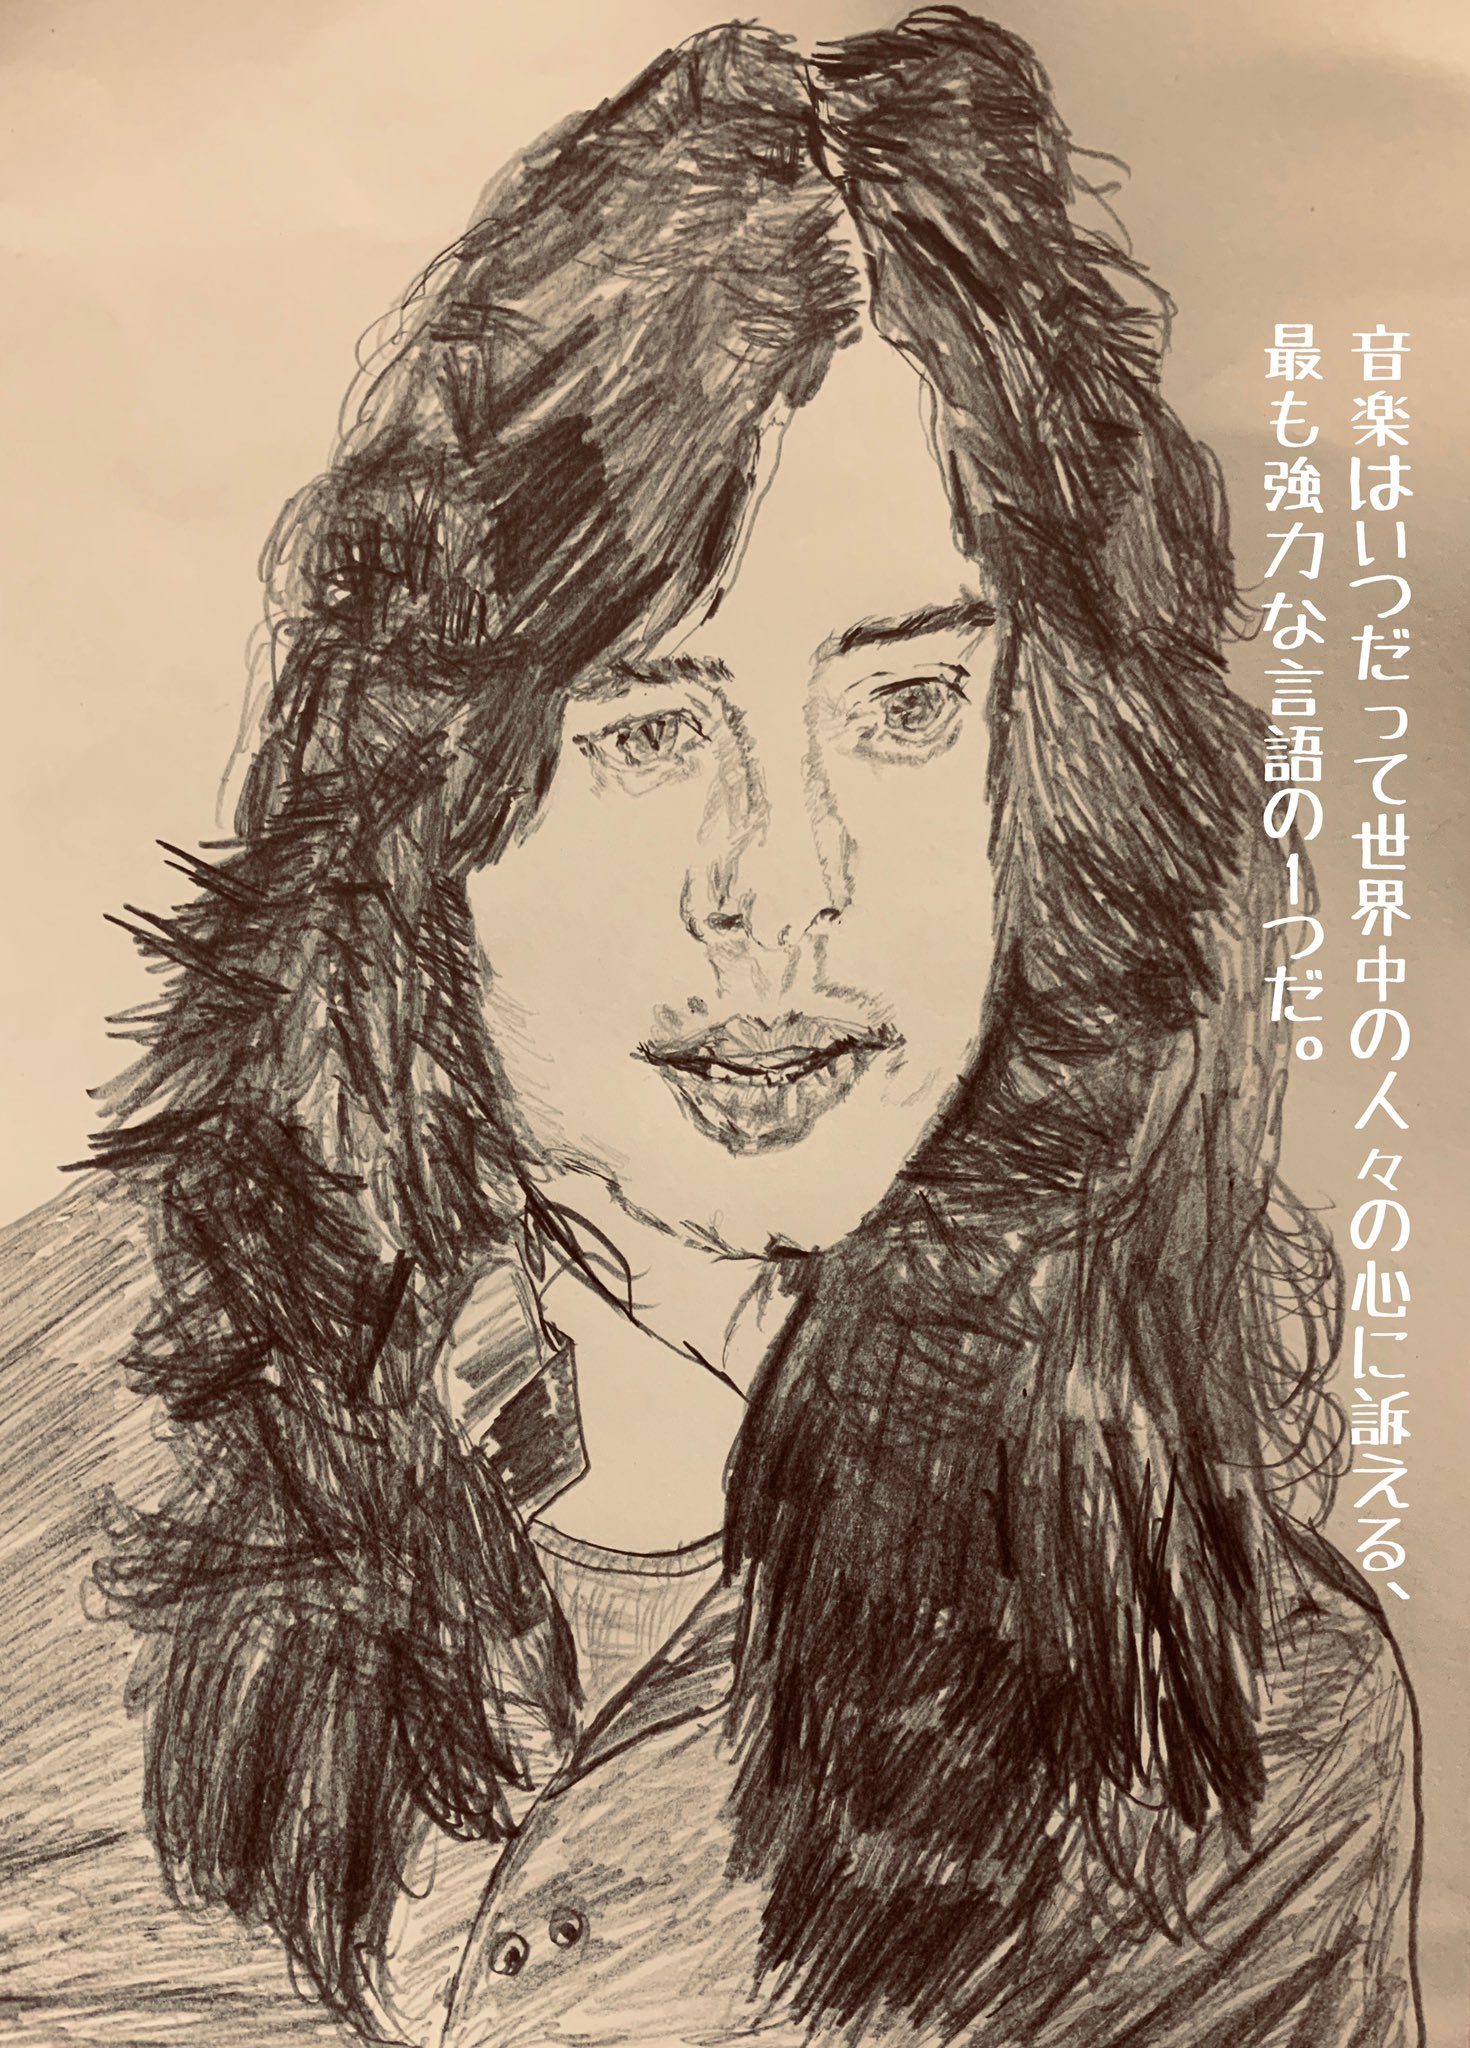 Hiro C Collection 400 Jimmy Page Led Zeppelin レッドツェッペリンのジミーペイジの絵です 名言バージョンです T Co W7nbblz9p4 Twitter